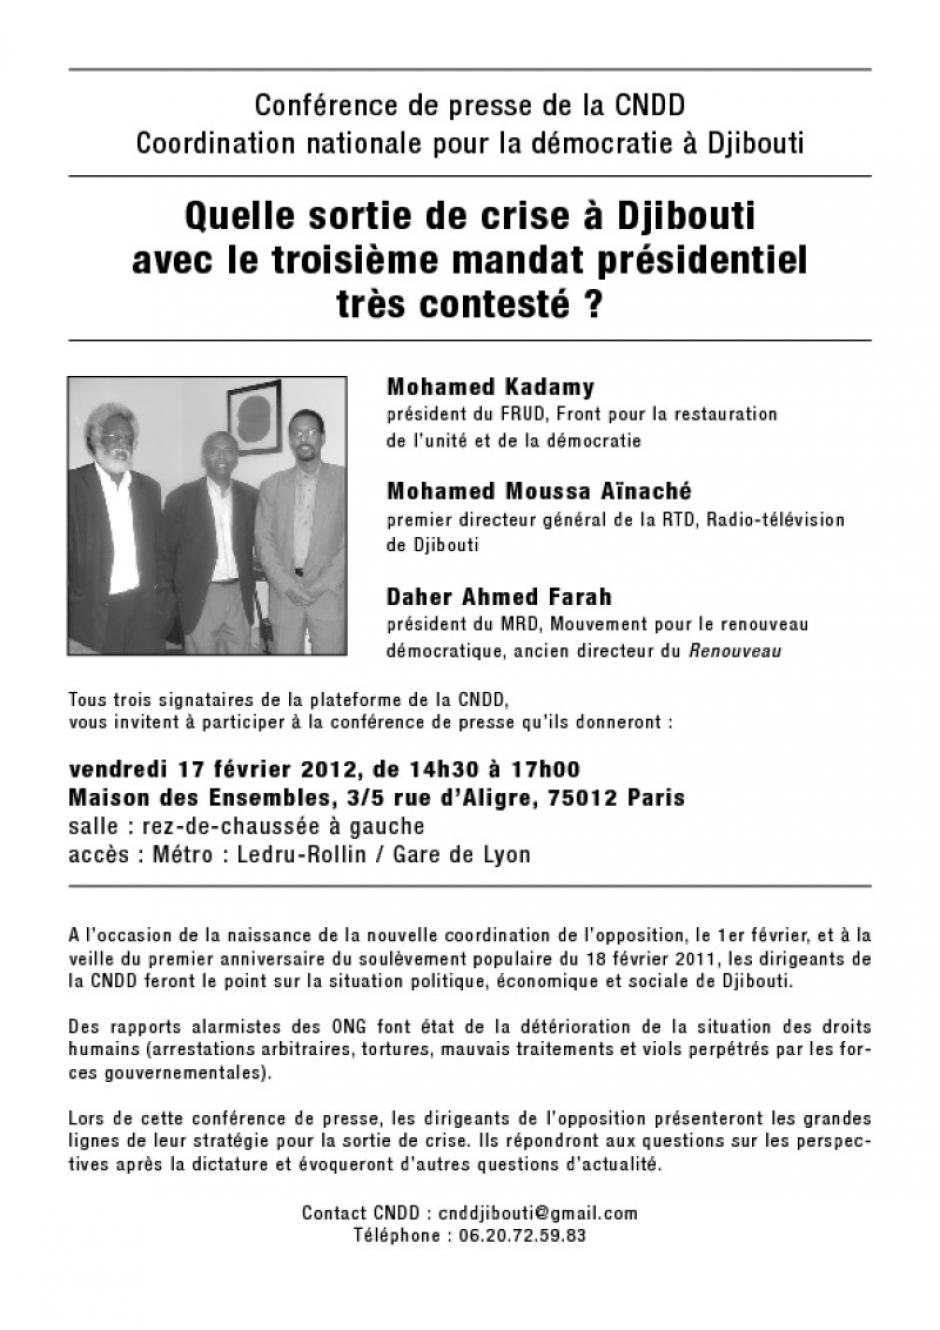 Quelle sortie de crise à Djibouti avec le troisième mandat présidentiel très contesté ? Conférence de presse de la CNDD le 17/02/2012